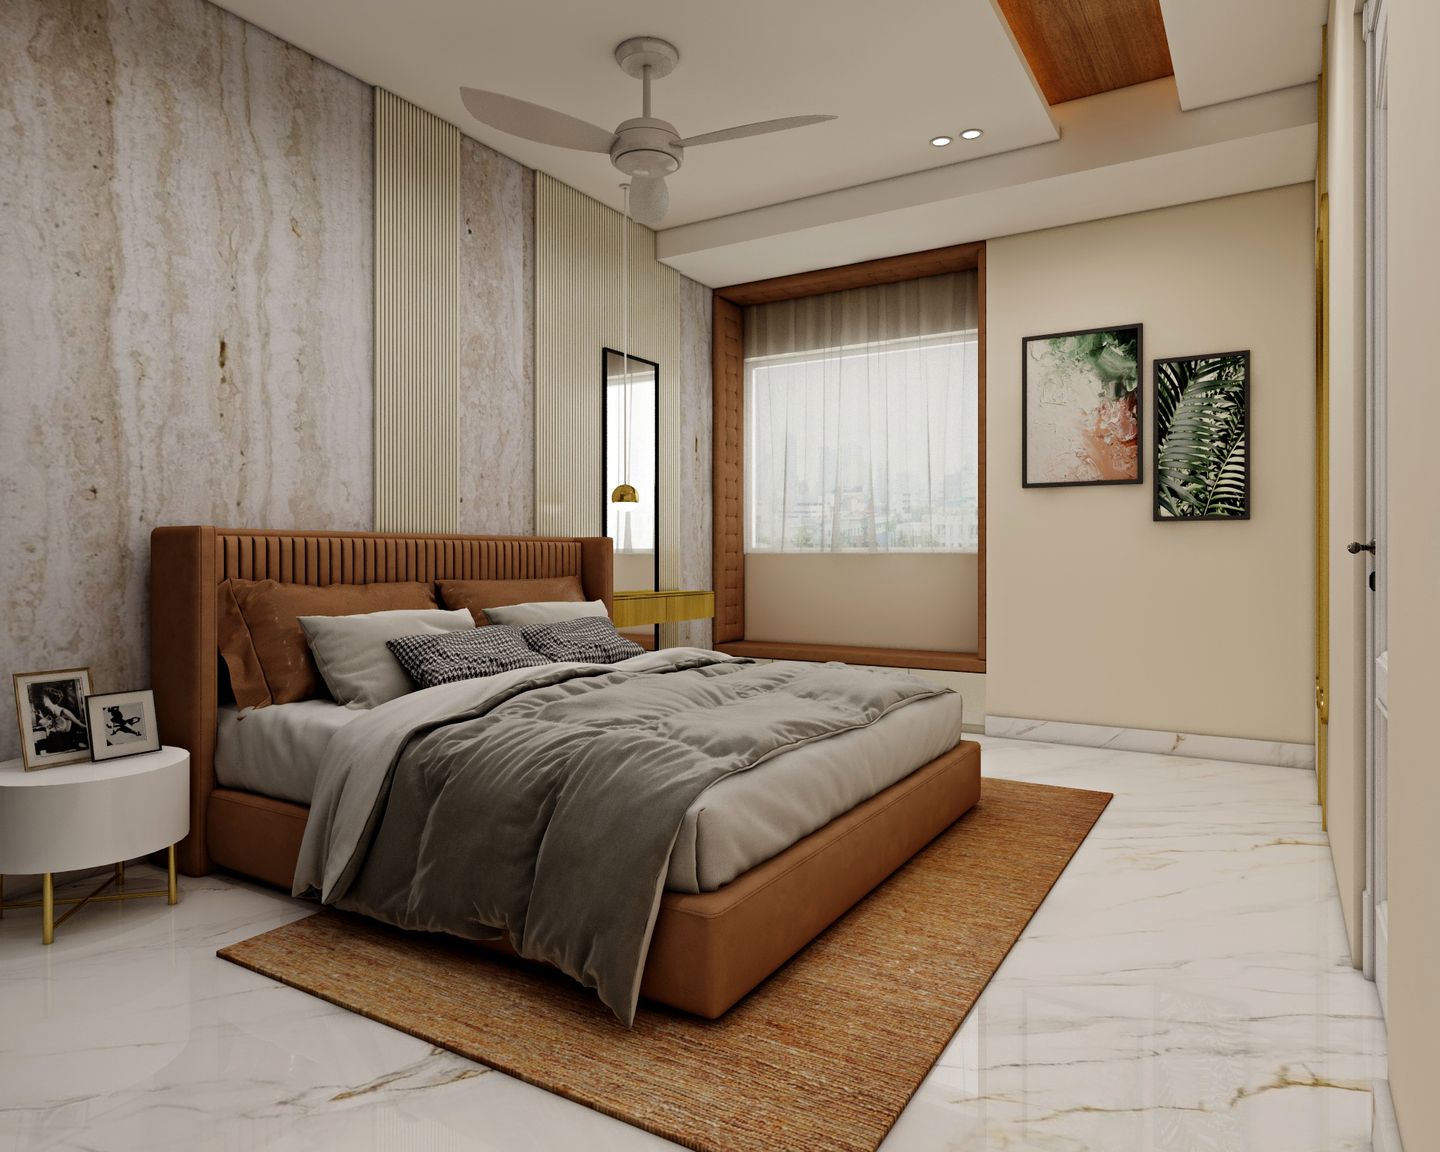 Modern Guest Room Design Ideas For Rental Homes - Livspace